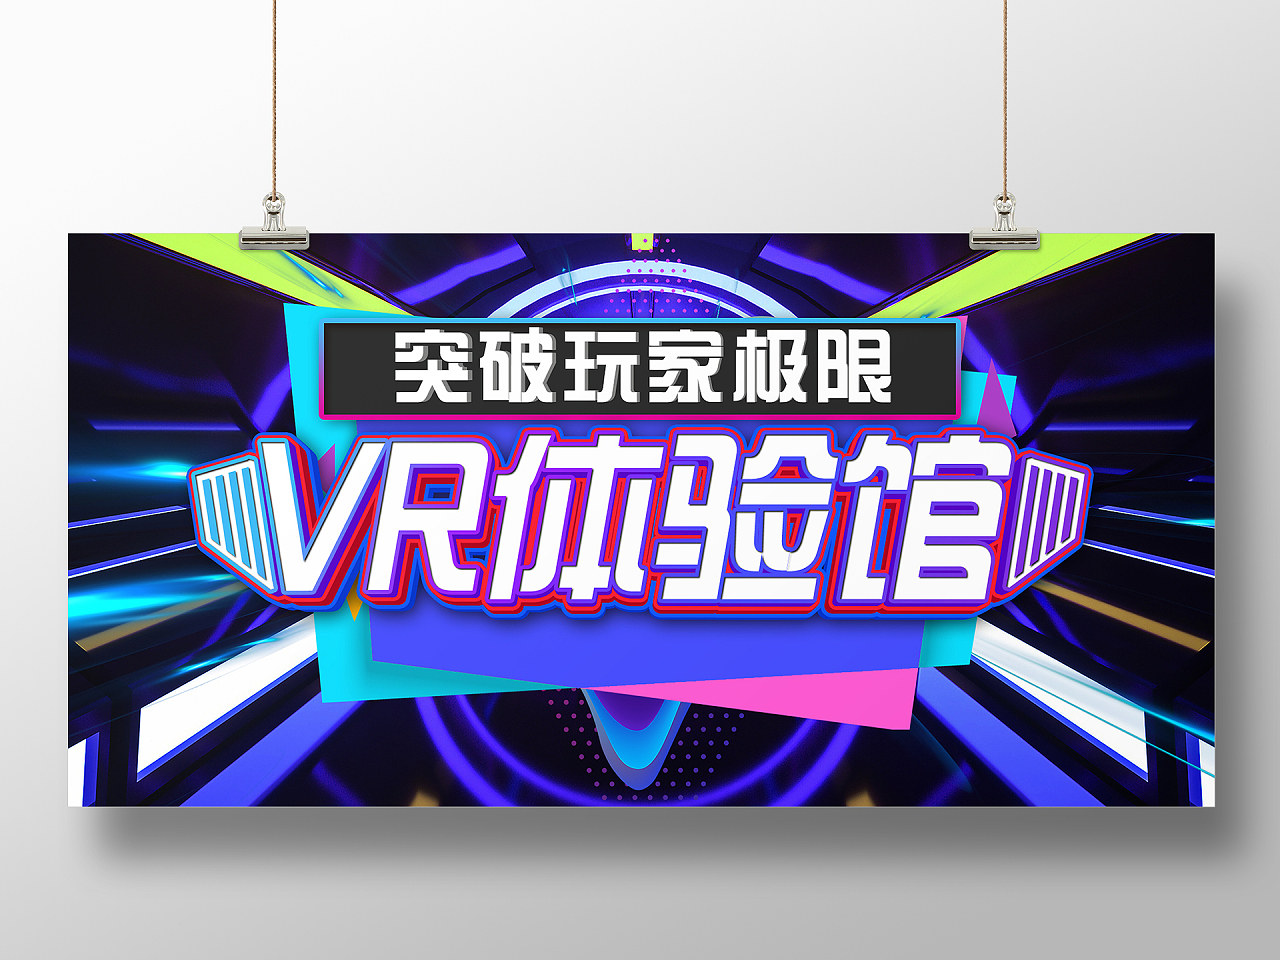 蓝色炫酷VR体验馆突破玩家极限宣传展板vr体验馆展板